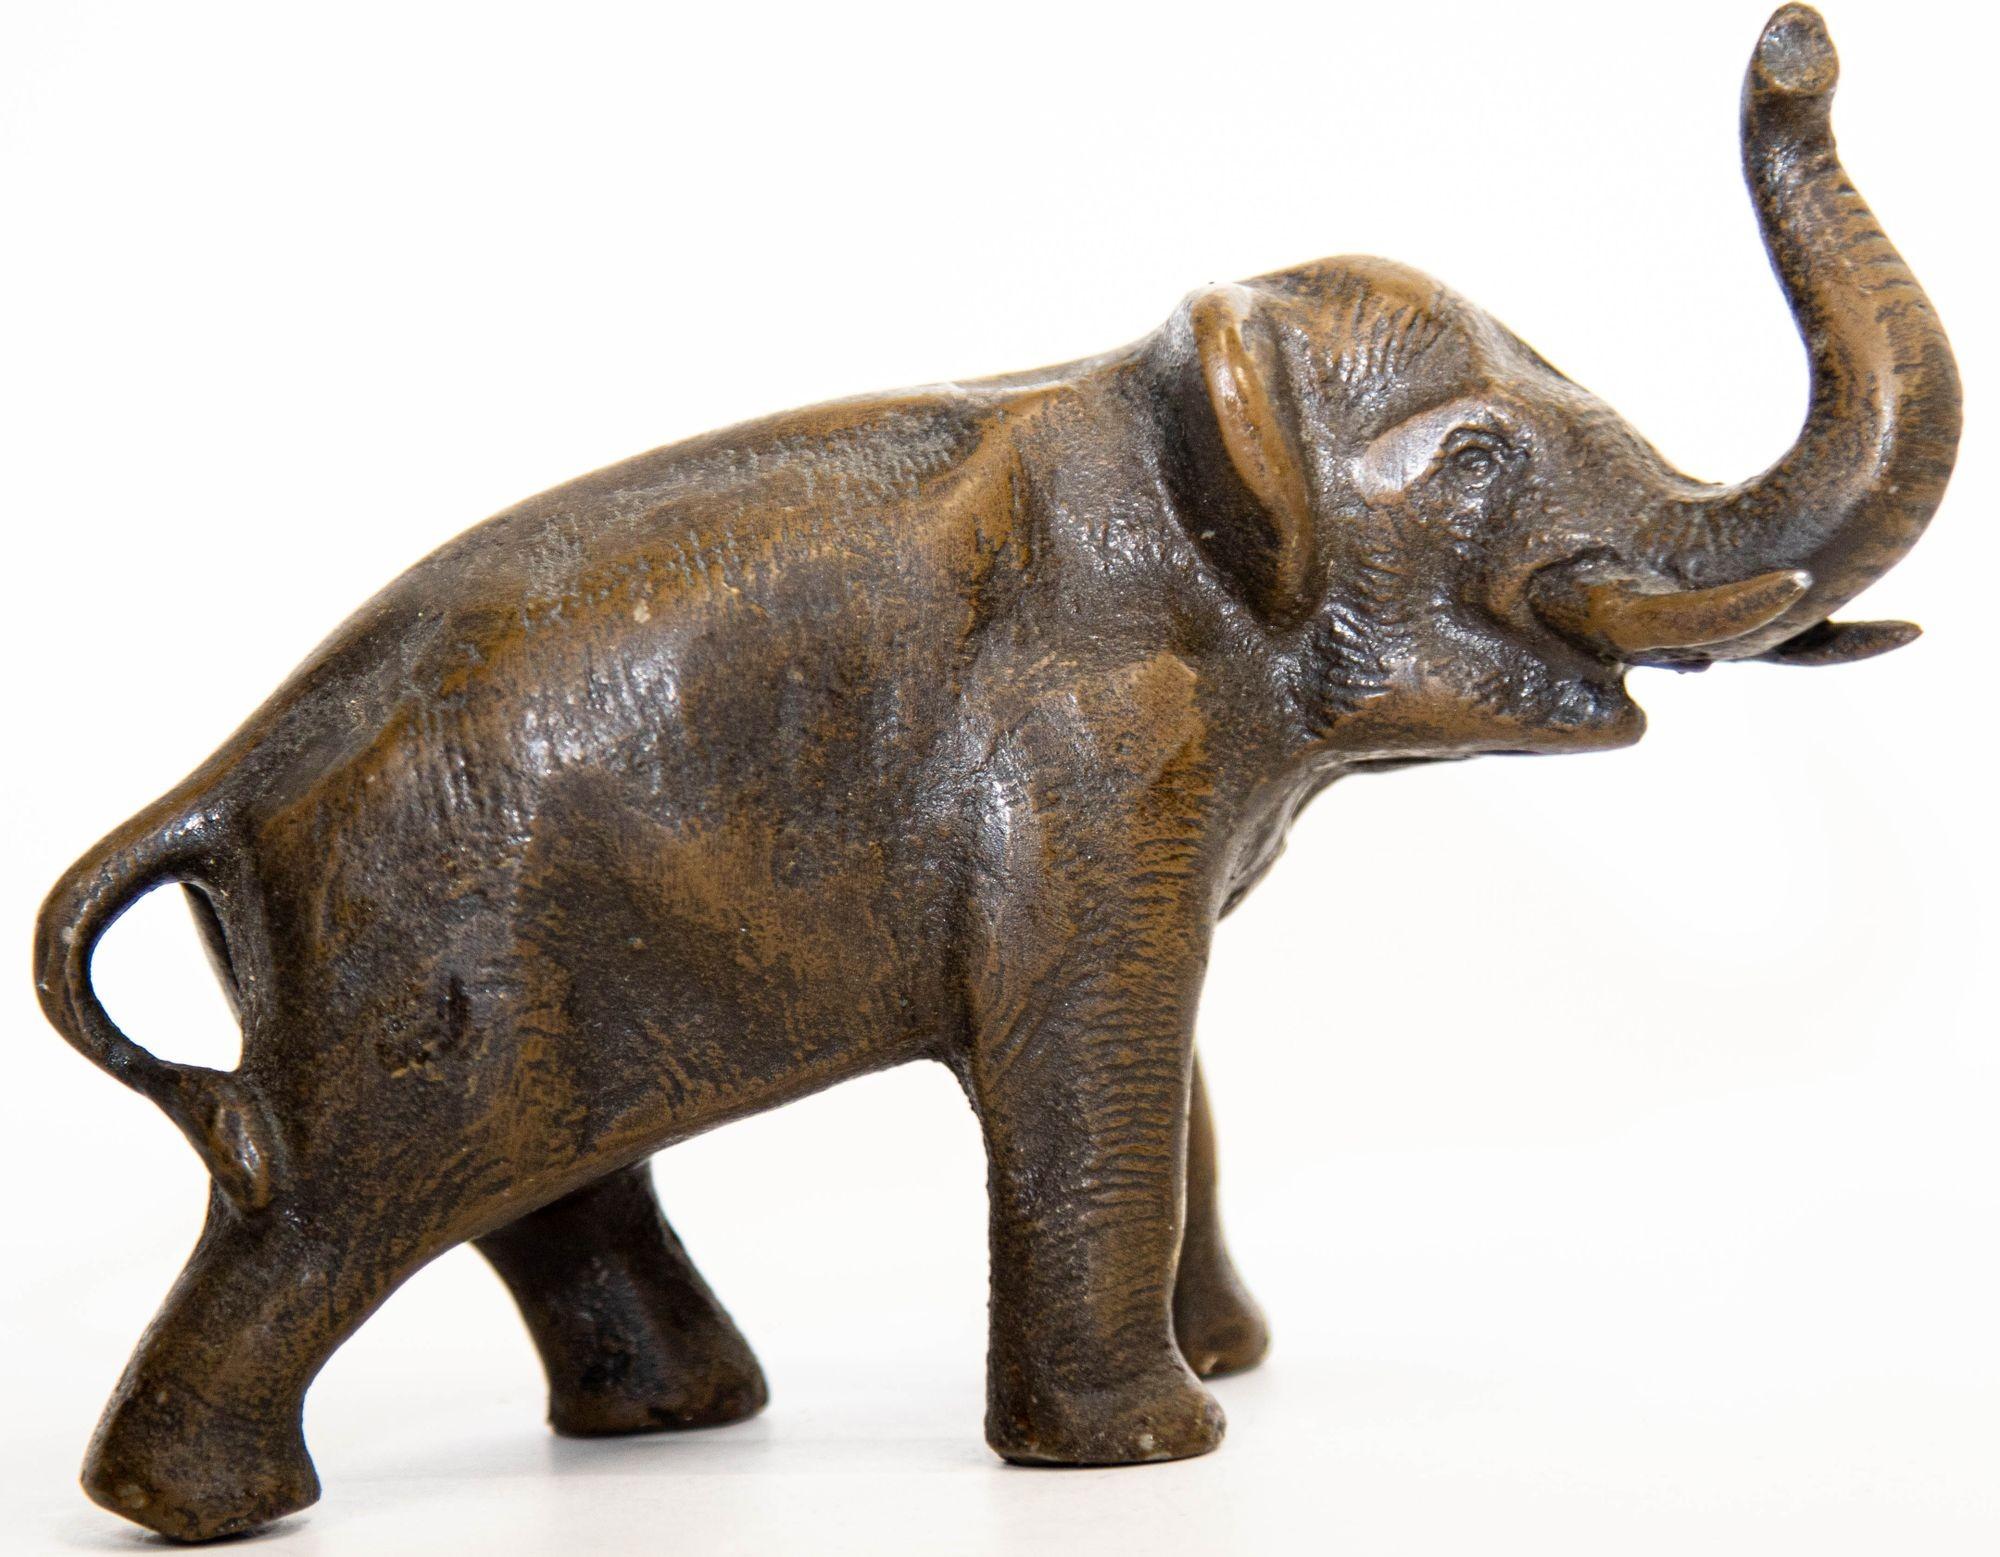 Magnifique sculpture en bronze de style oriental japonais de la période Meiji représentant un éléphant marchant avec sa trompe levée.
Art en métal bien moulé, lourd, éléphant en bronze dans une finition cuivre brun foncé.
Cette figurine d'éléphant